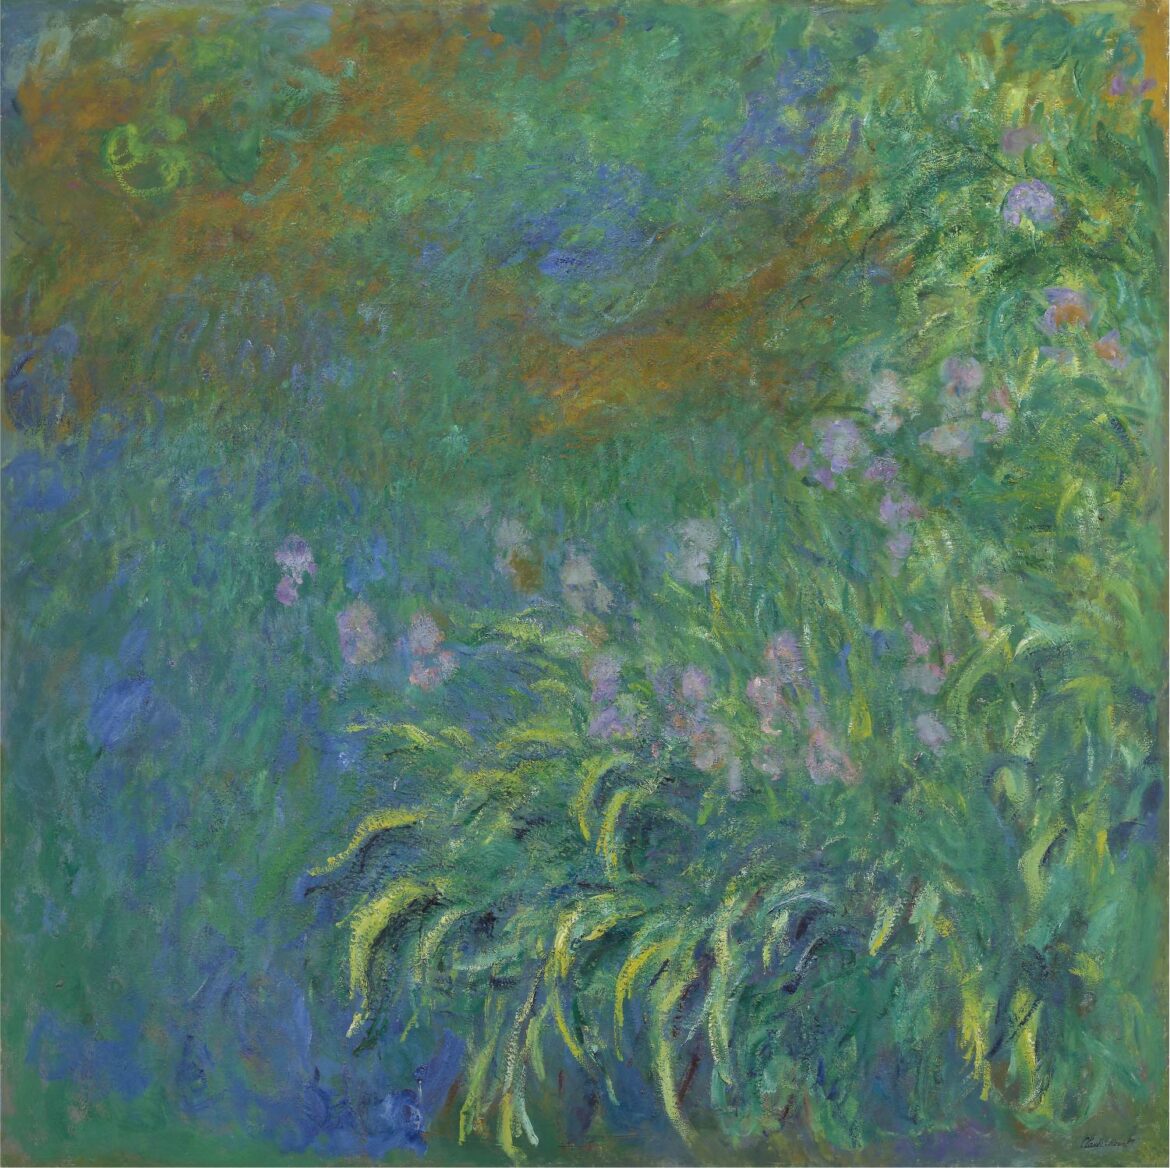 【無料壁紙】クロード・モネ「アイリス (1914-1917)」 / Claude Monet_Irises (1914-1917)